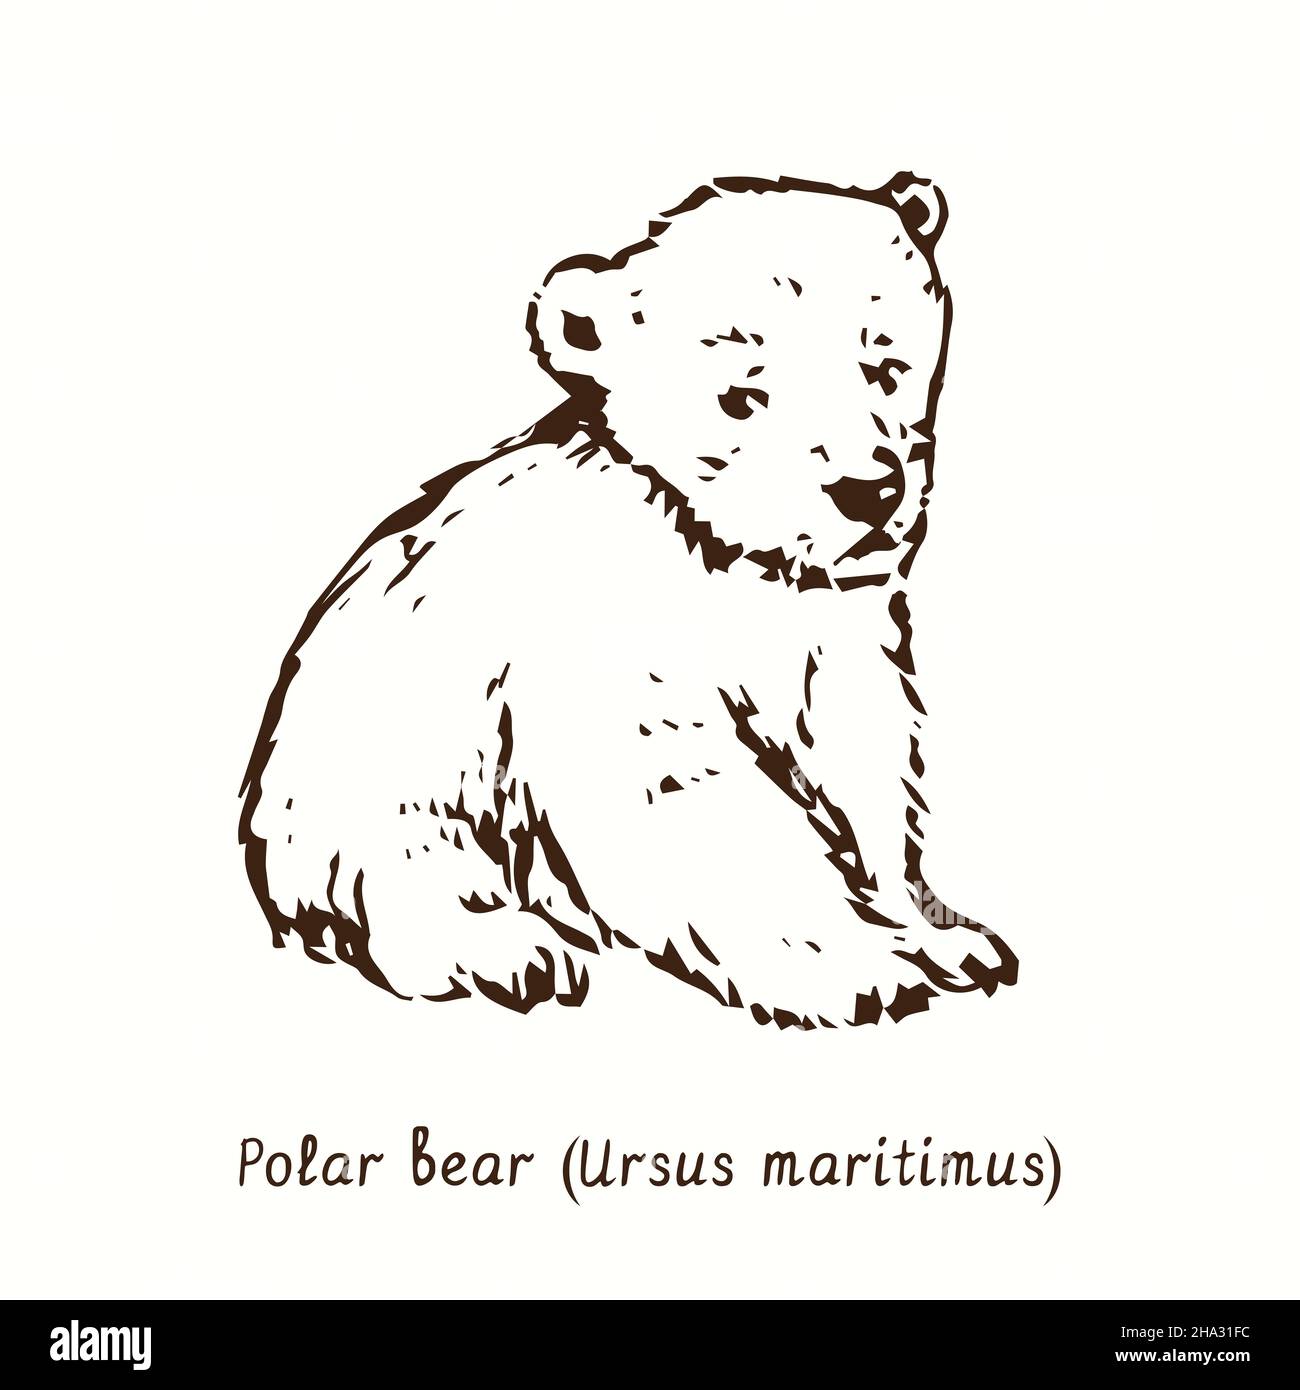 Eisbärenjunge (Ursus maritimus) sitzend. Tusche schwarz-weiße Doodle Zeichnung im Holzschnitt-Stil. Stockfoto